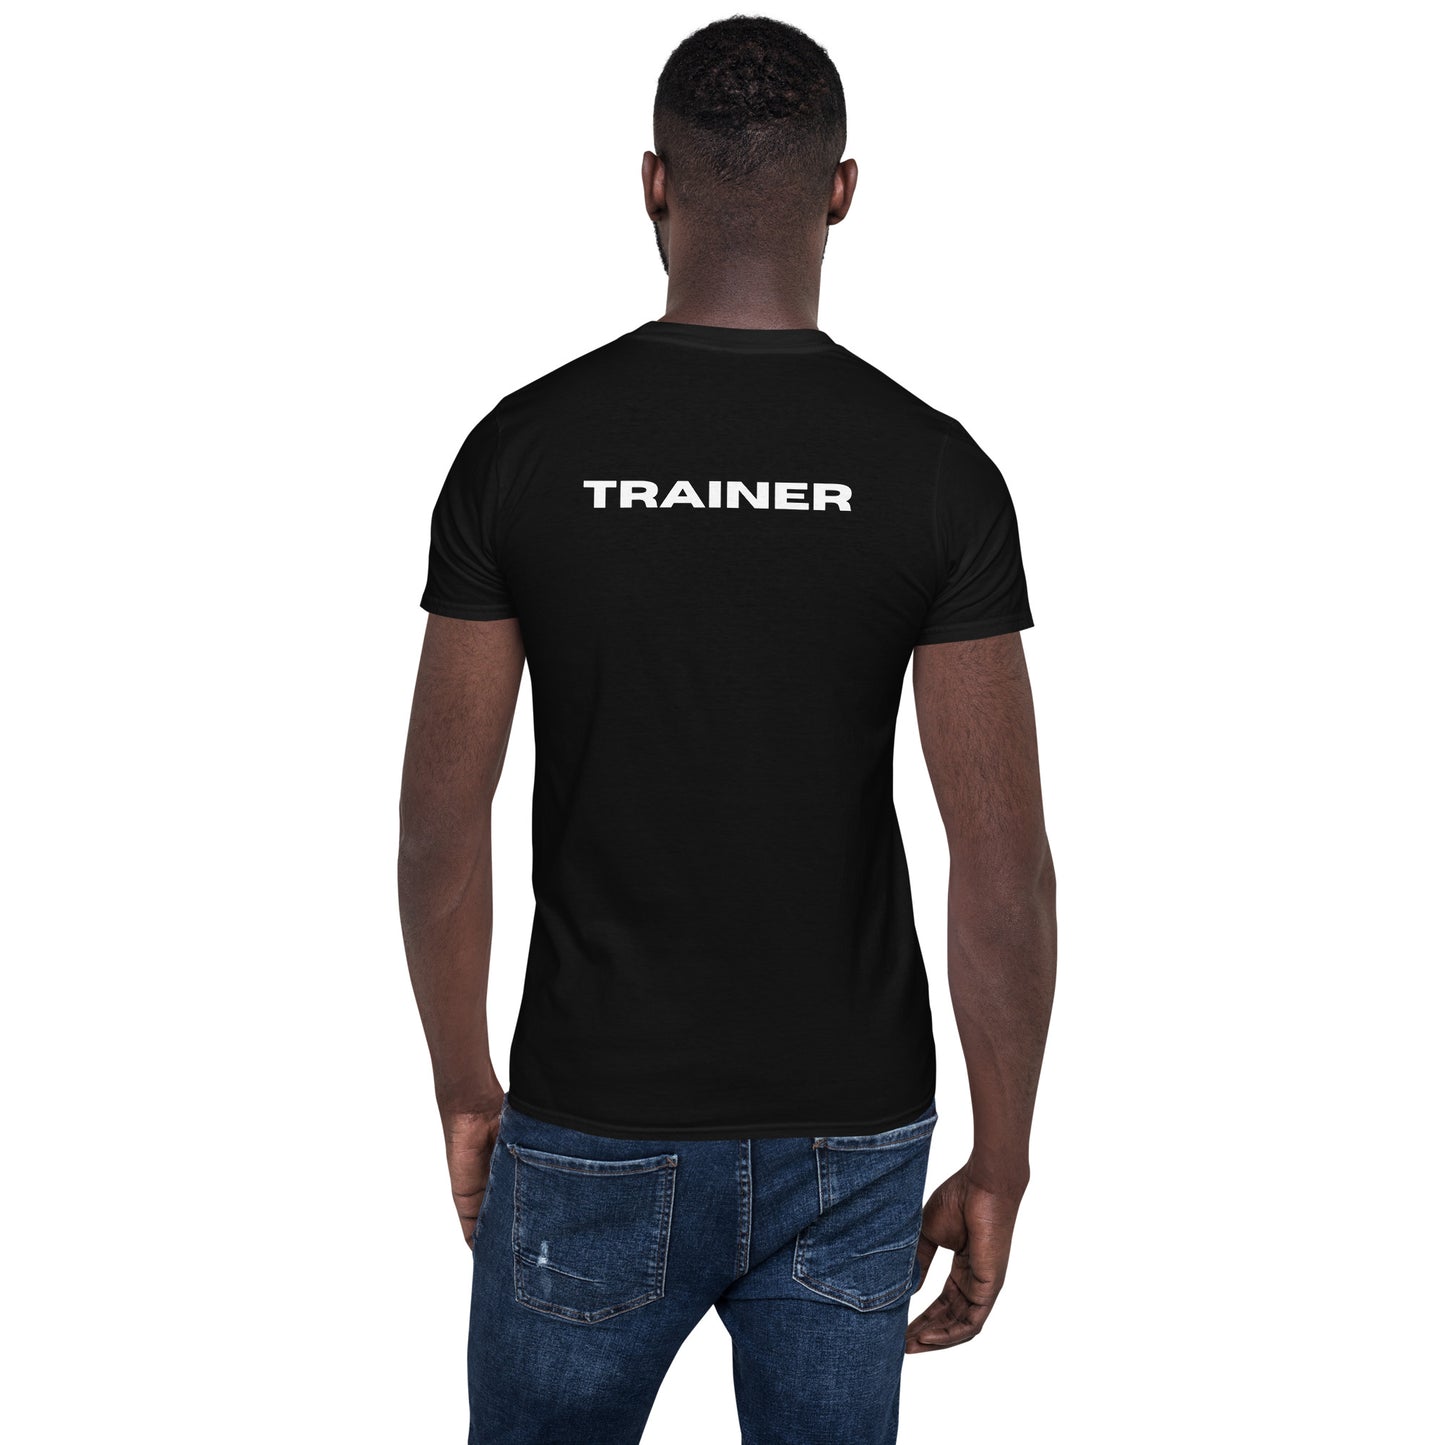 Fitness Trainer Short-Sleeve Unisex Black T-Shirt